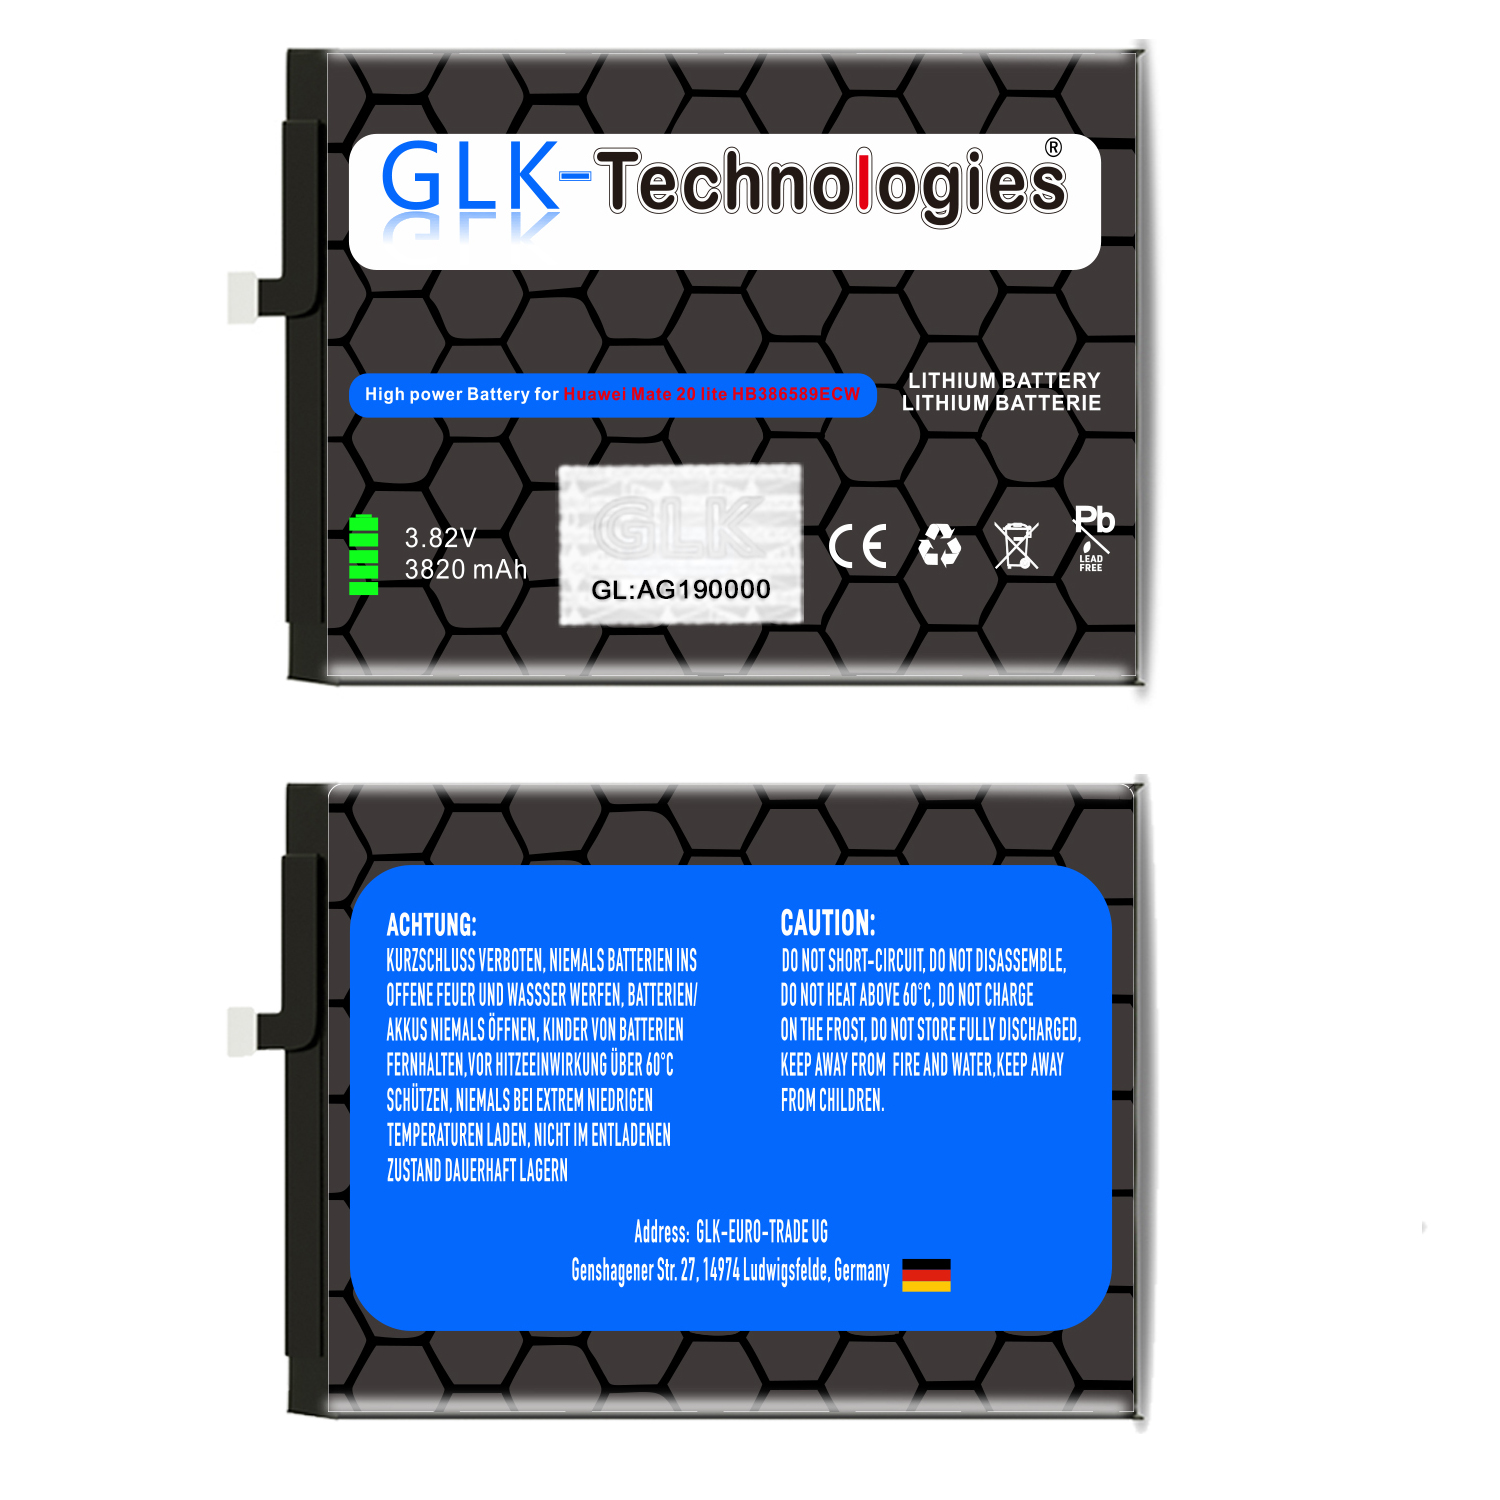 Ersatz Ersatz HB386589ECW 2x Battery P10 Akku Power Lithium-Ionen-Akku Plus Huawei GLK-TECHNOLOGIES Akku 3820mAh High inkl. für Smartphone Klebebandsätze